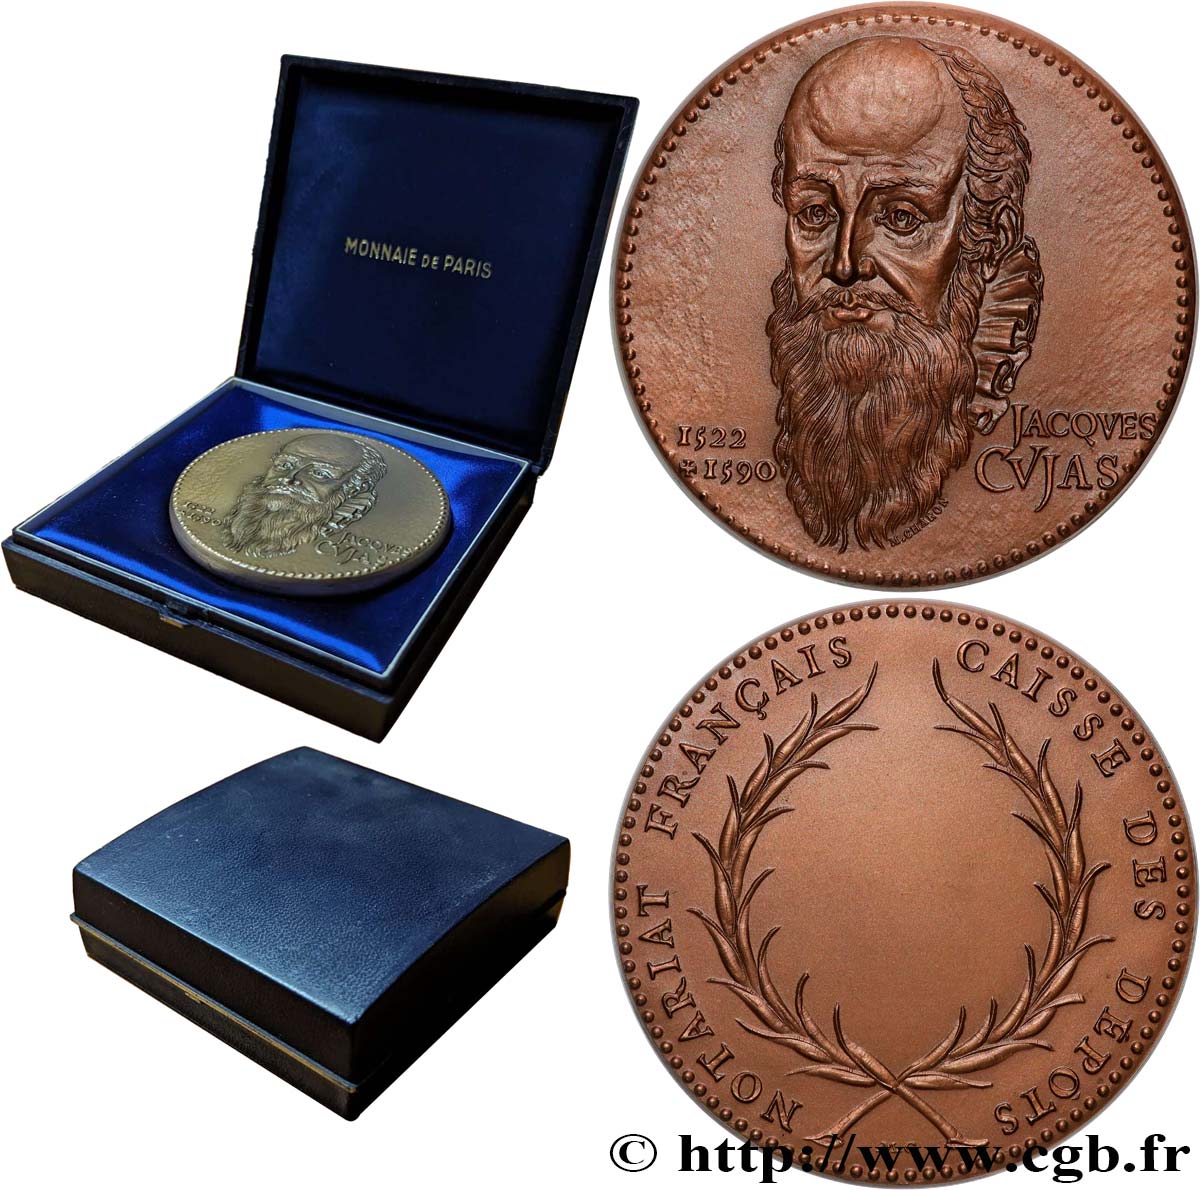 NOTAIRES DU XIXe SIECLE Médaille, Jacques Cujas, Notariat français, caisse des dépôts SUP